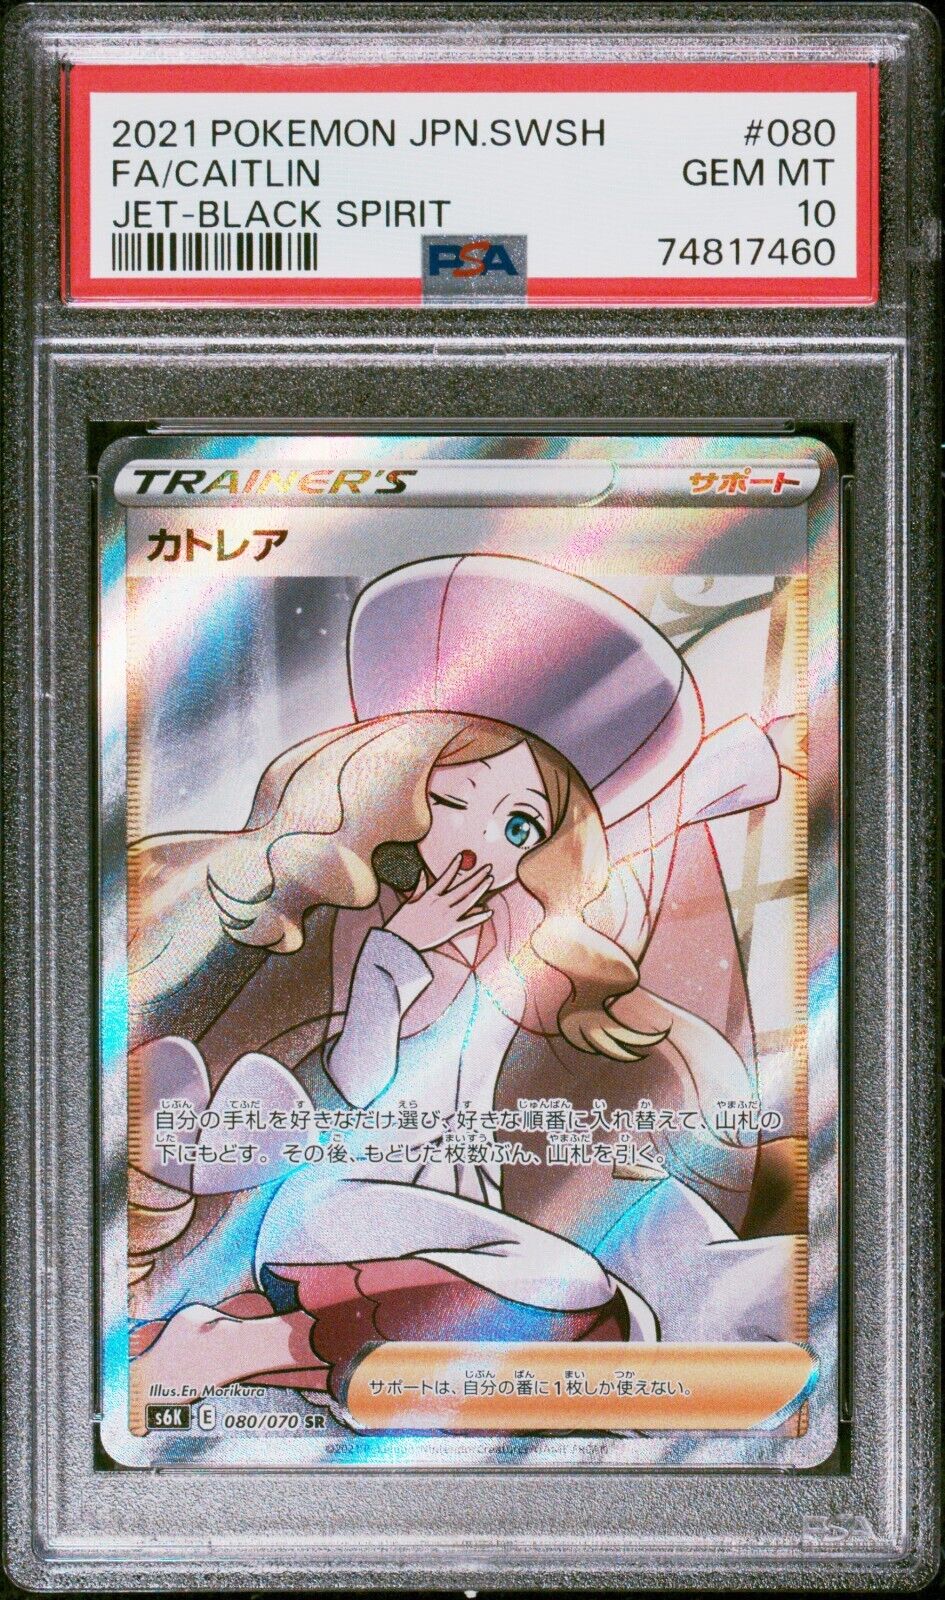 Pokemon  Caitlin   s6K 080070  PSA 10 GEM Mint Japanese